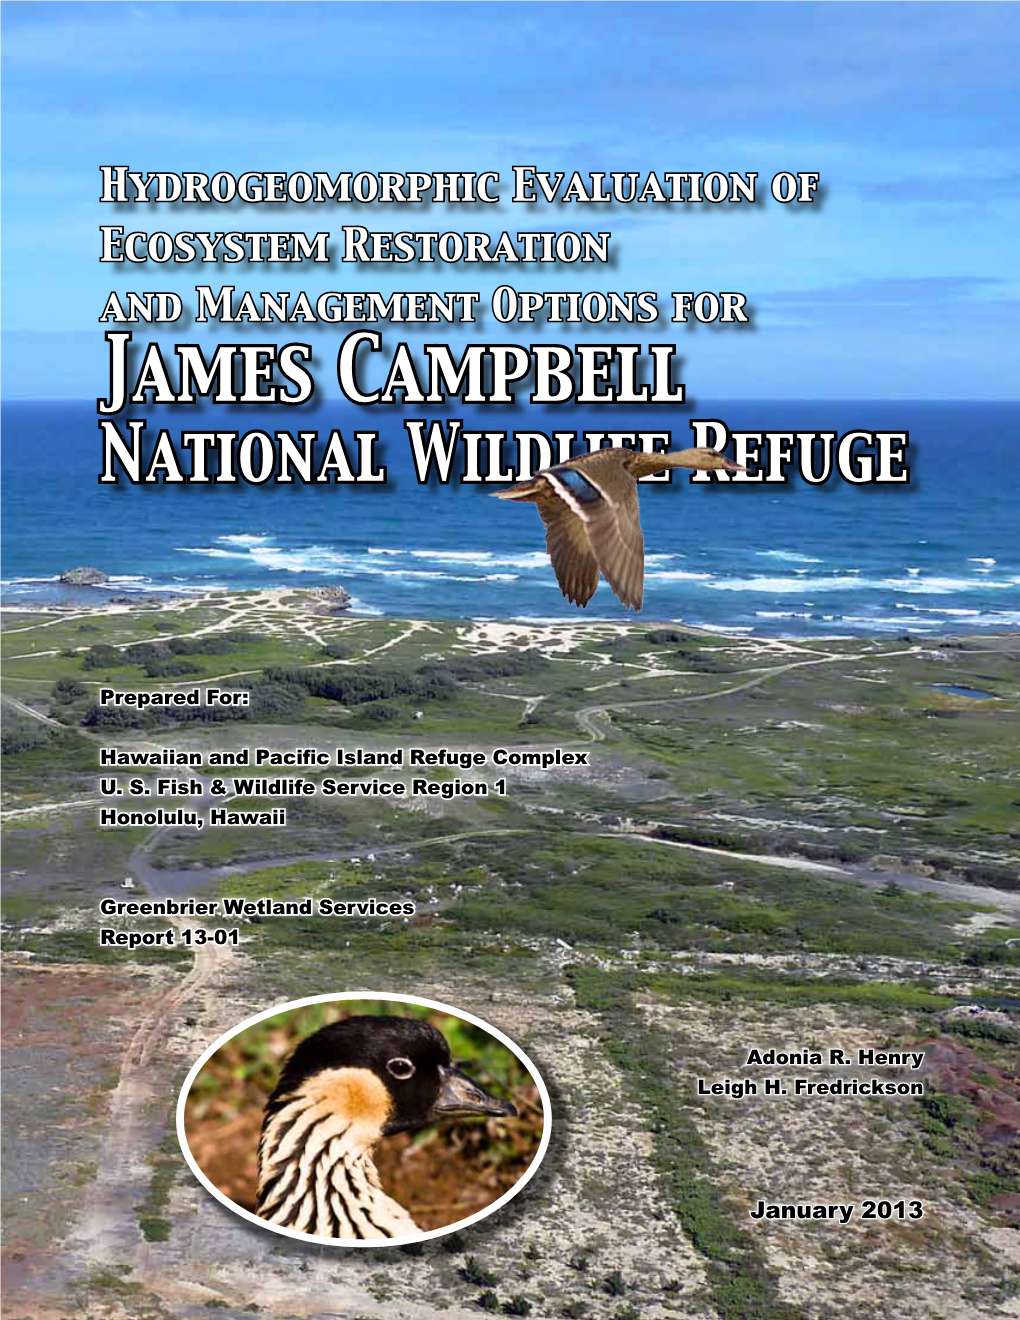 James Campbell National Wildlife Refuge